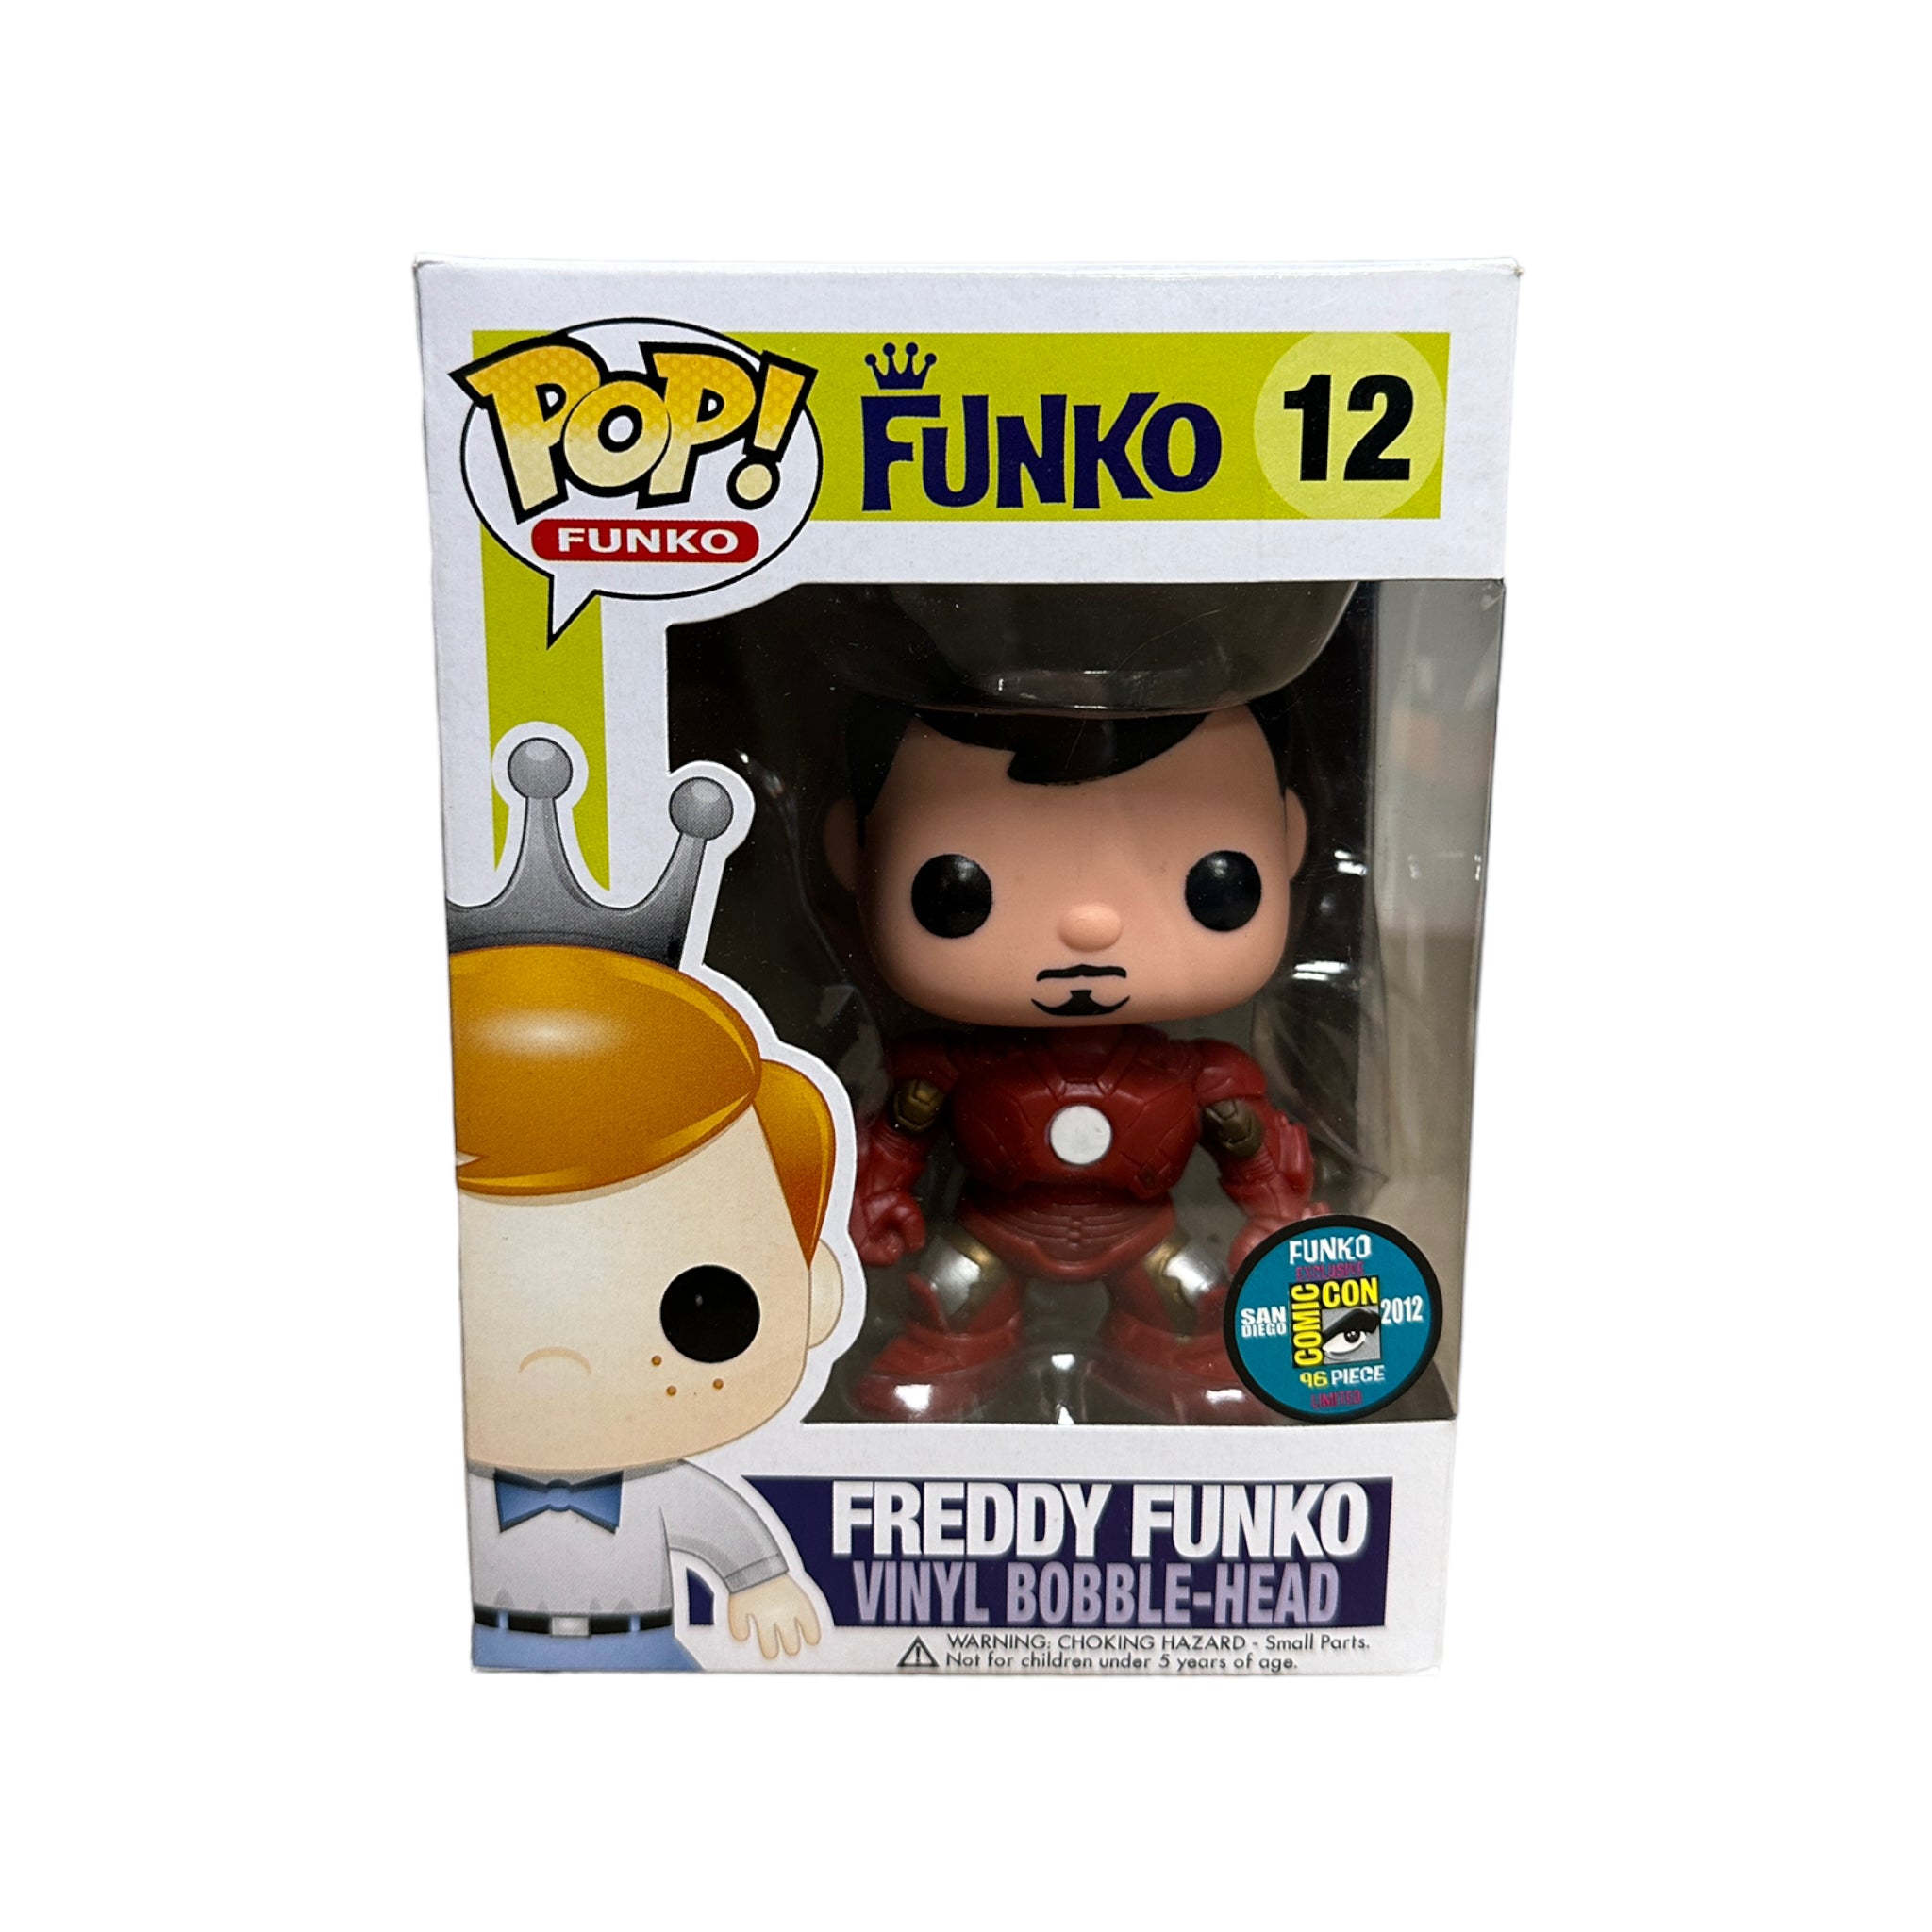 Freddy Funko as Tony Stark #12 Funko Pop! - SDCC 2012 Exclusive LE96 Pcs - Condition 7/10